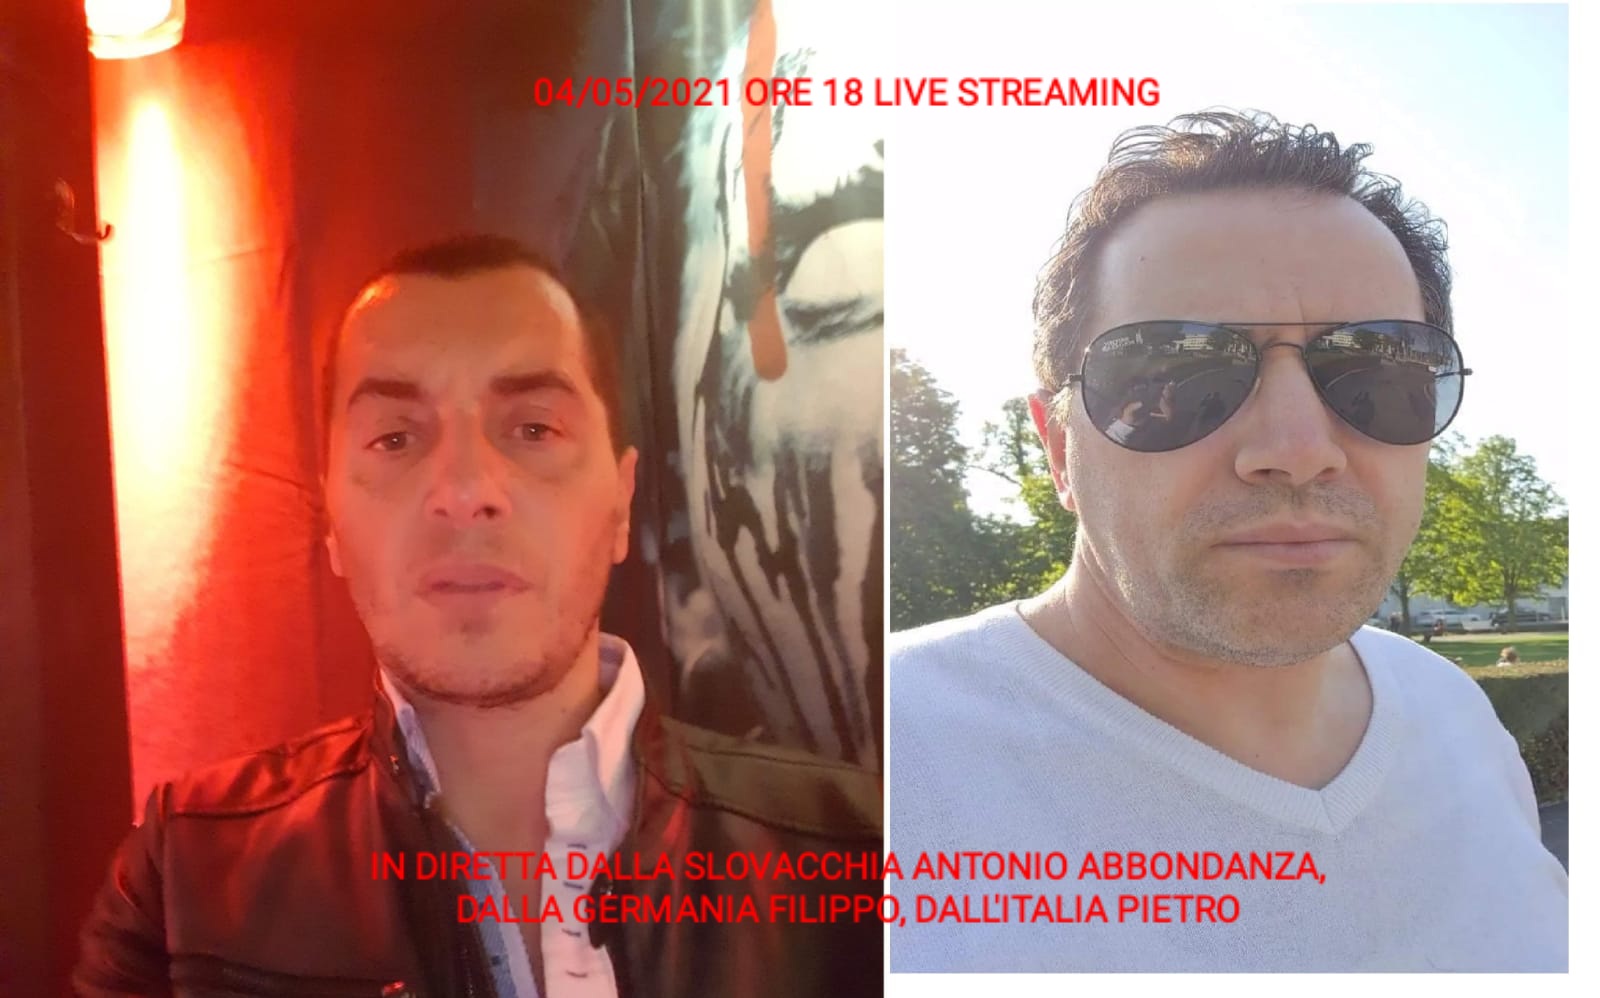 LIVE STREAMING 04/05/2021 ORE 18:00 GERMANIA (Filippo) - SLOVACCHIA (Antonio Abbondanza) - ITALIA (Pietro) PARTE 3